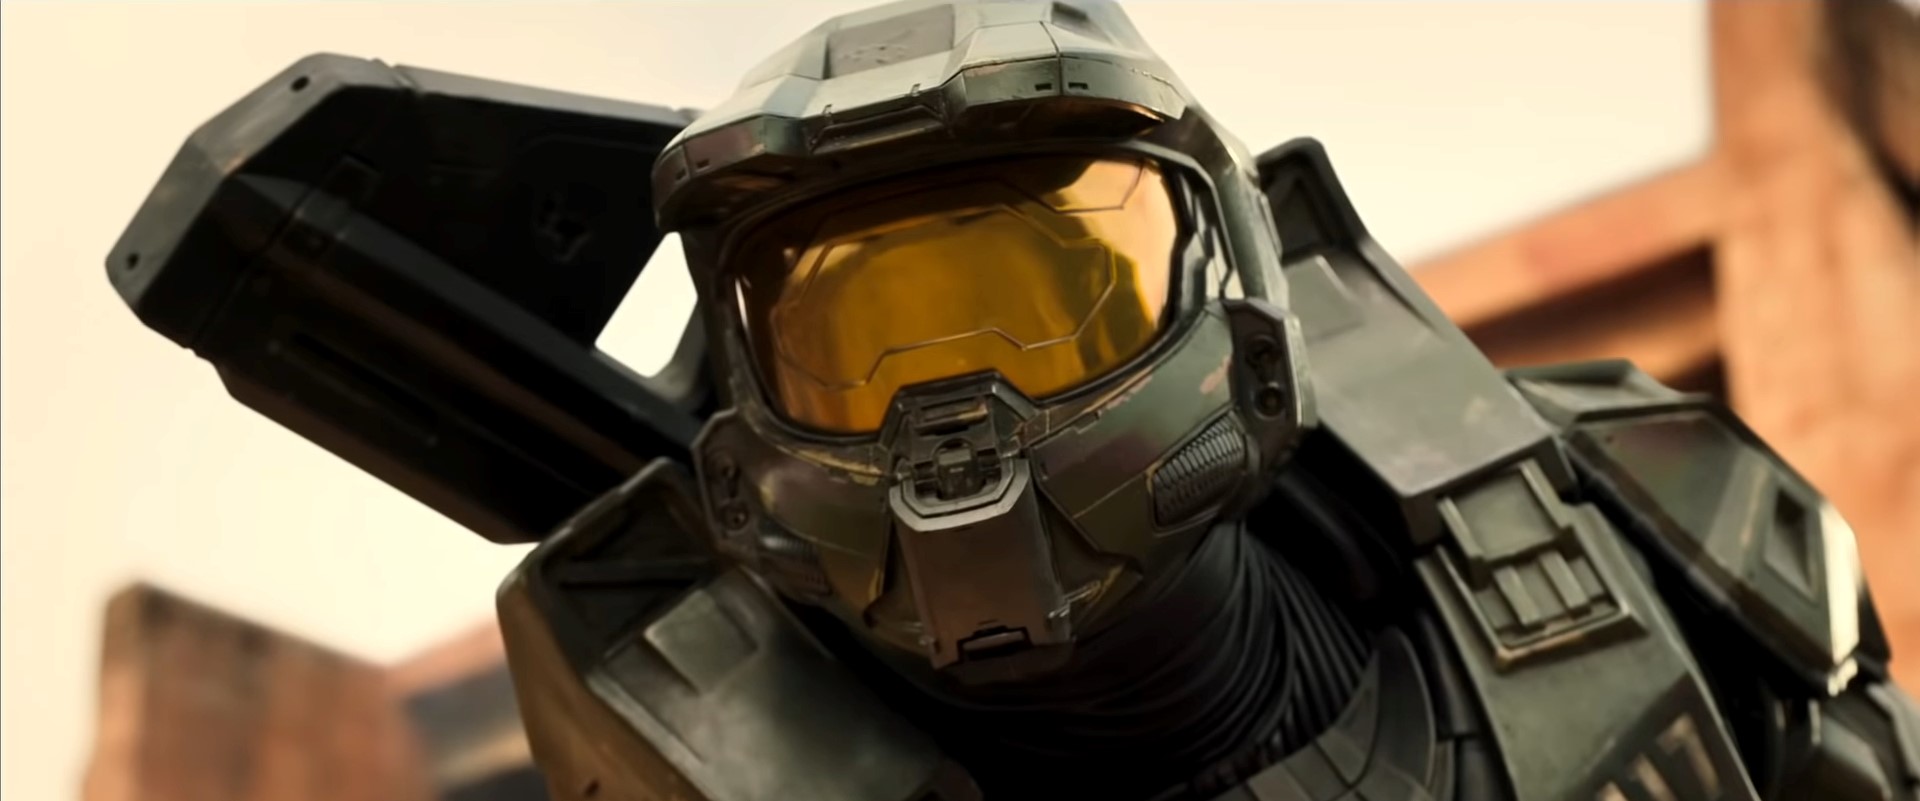 Halo Infinite' terá conteúdo temático da série 'Halo' da Paramount+